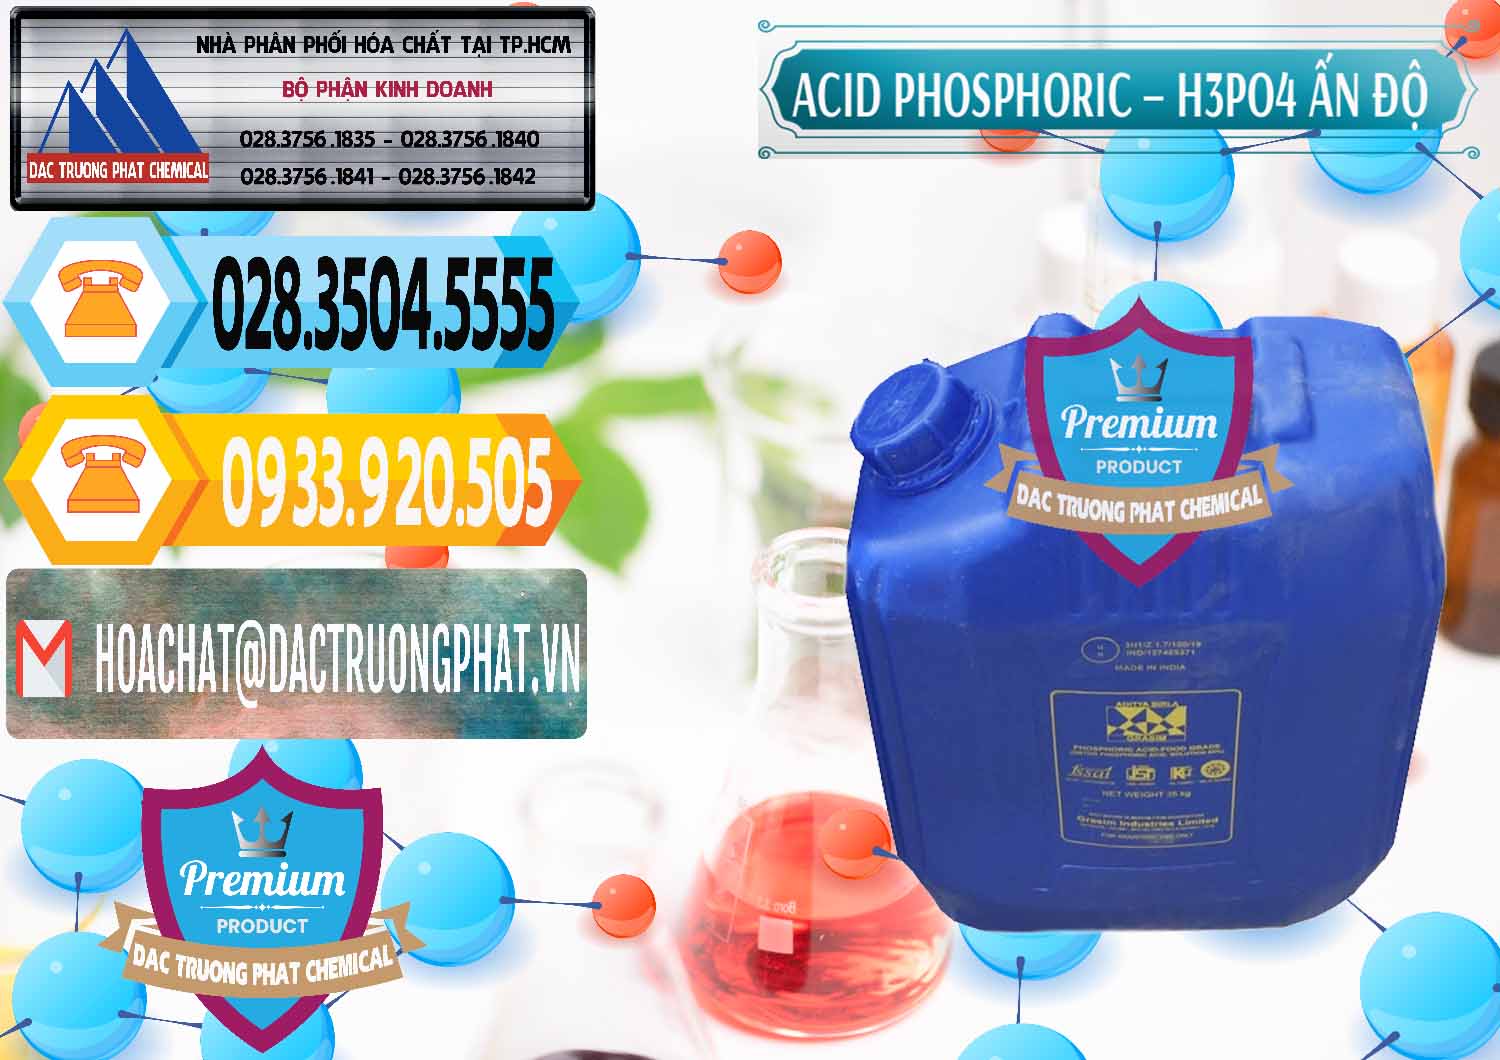 Cty cung cấp - bán Axit Phosphoric H3PO4 85% Ấn Độ - 0350 - Công ty chuyên nhập khẩu - phân phối hóa chất tại TP.HCM - hoachattayrua.net